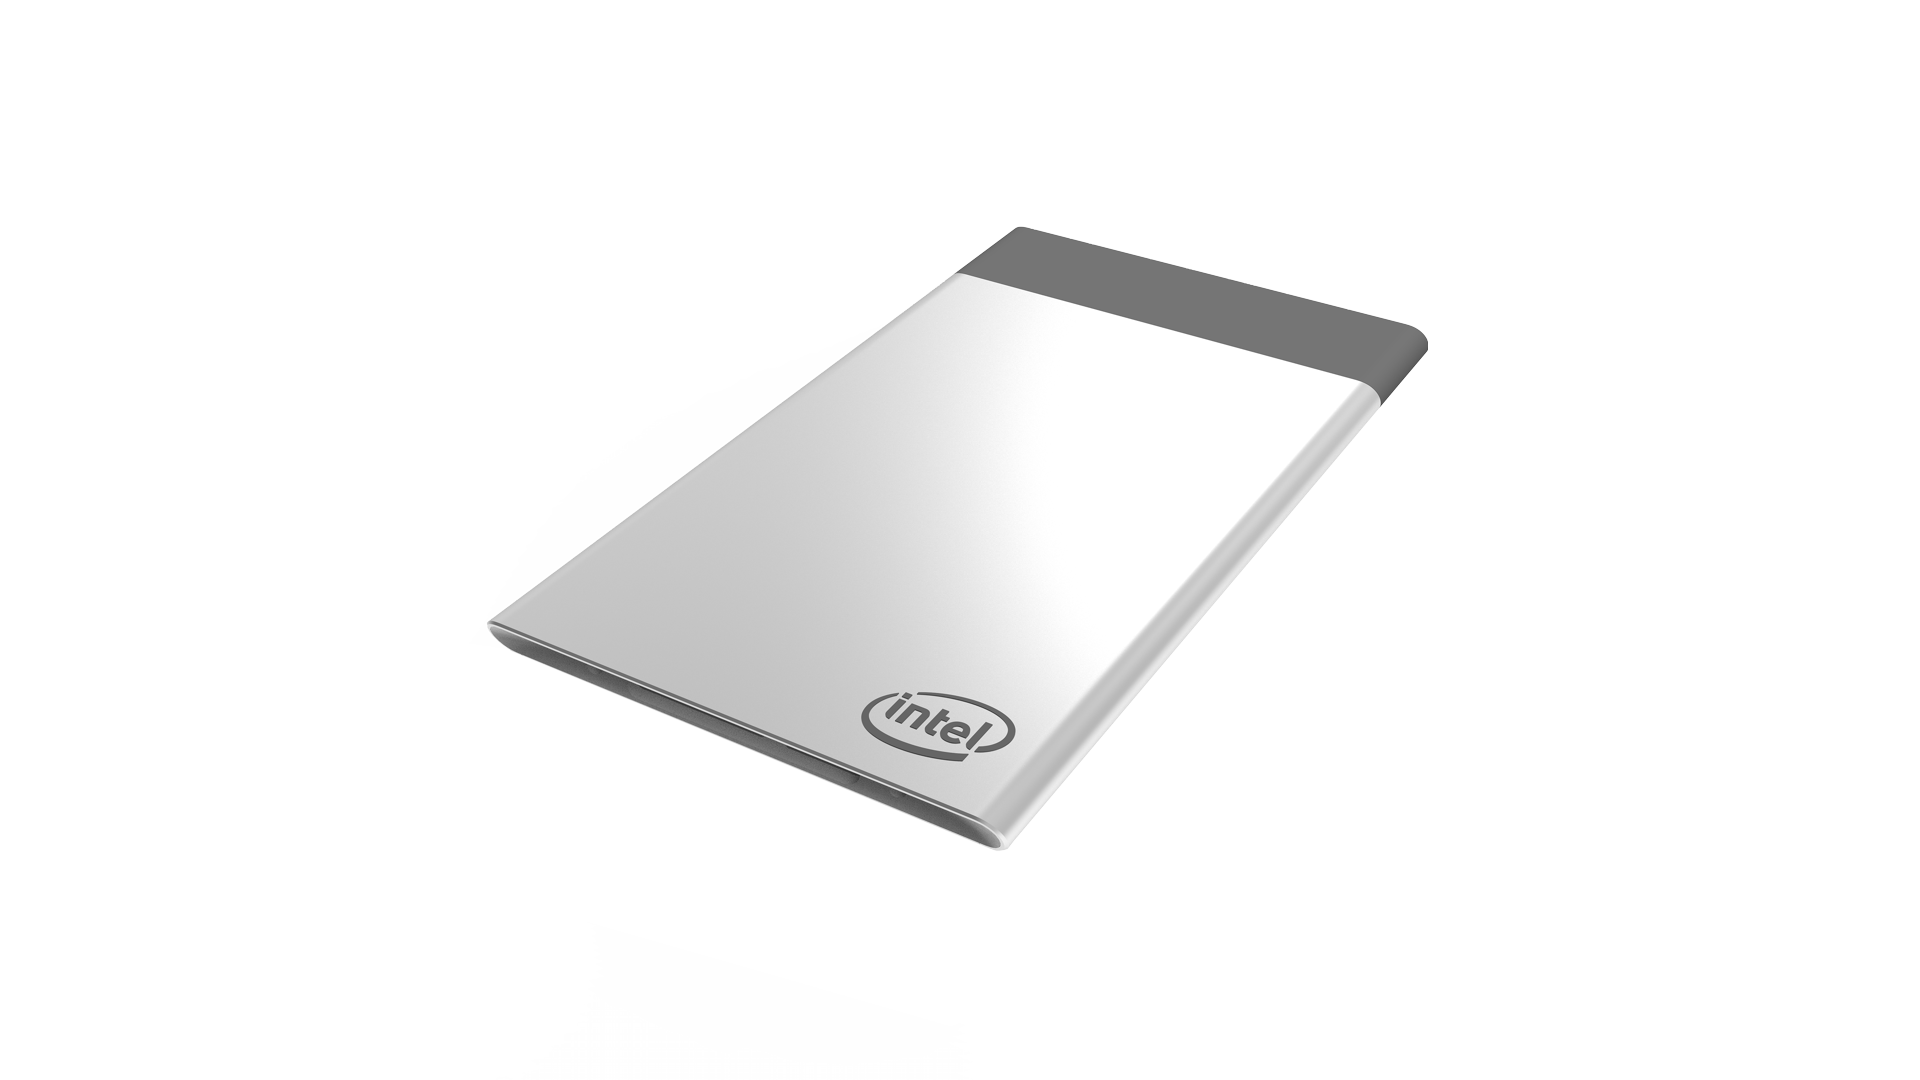 Immagine pubblicata in relazione al seguente contenuto: Intel presenta Compute Card, un computer grande come una carta di credito | Nome immagine: news25590_Intel-Compute-Card_1.png